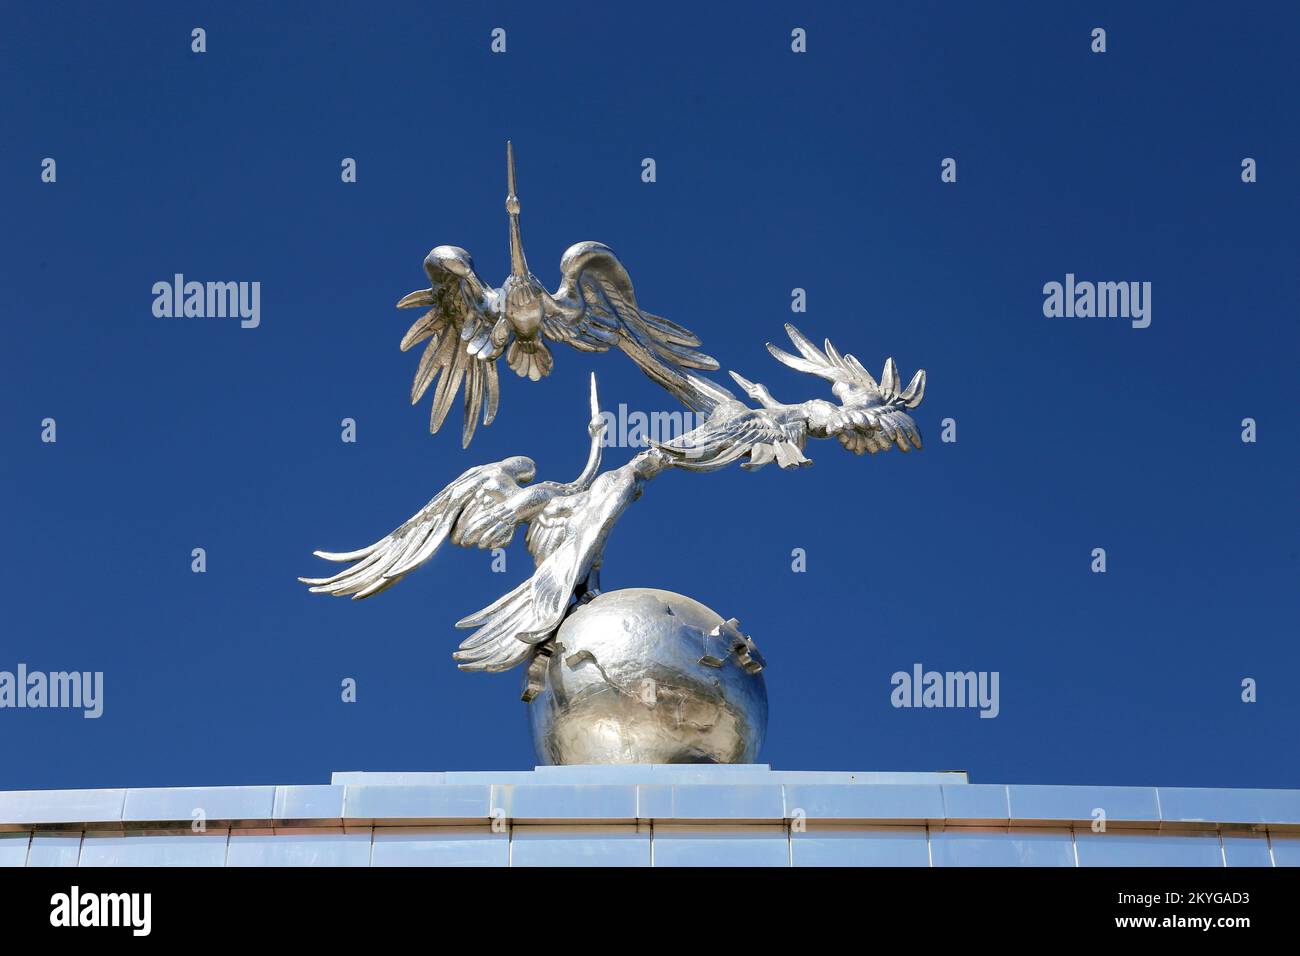 Cigognes symbolisant la paix et le calme, Mustakillik Maydoni (place de l'indépendance), Tachkent central, province de Tachkent, Ouzbékistan, Asie centrale Banque D'Images